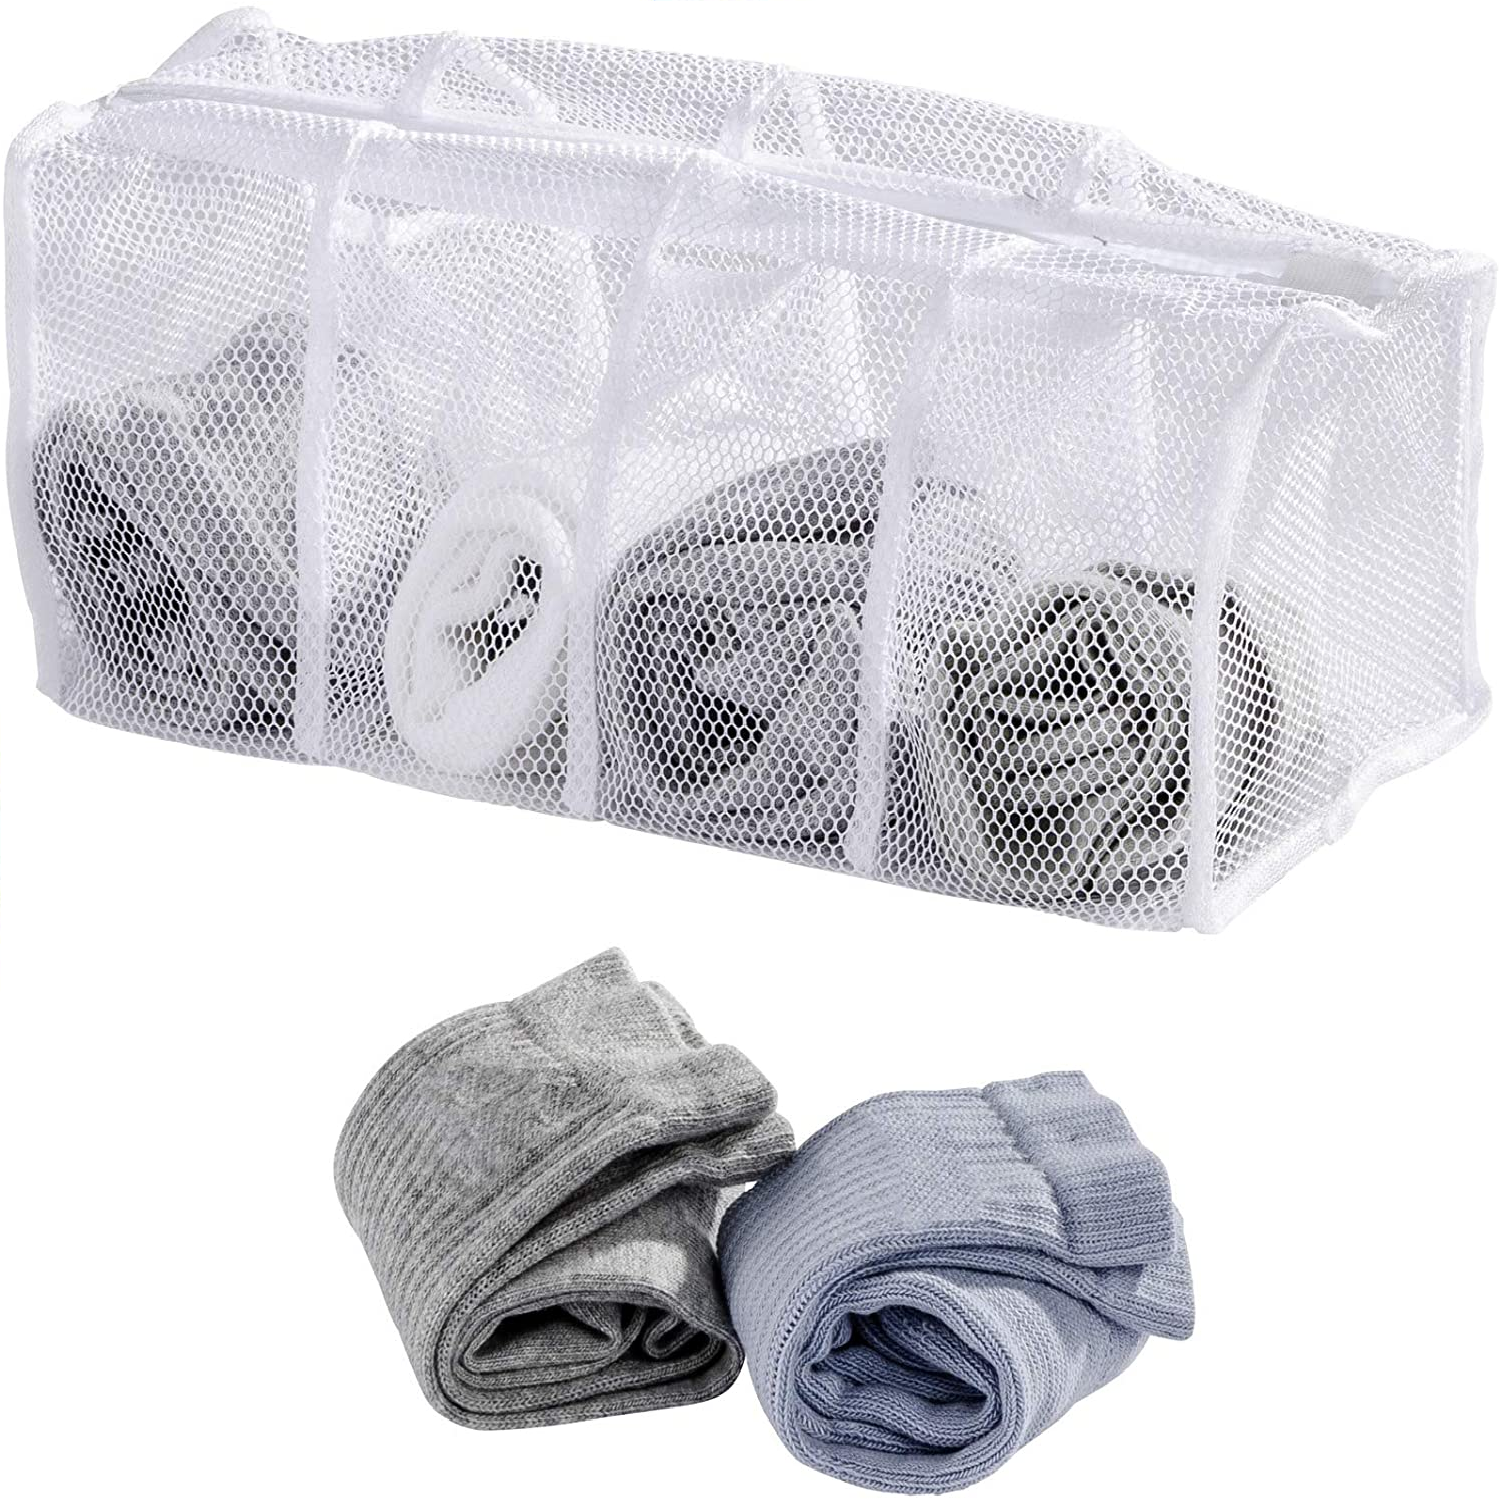 Socken-Wäschenetz mit 4 Fächern, Socken-Netz mit Reißverschluss und Abdeckung, schont die Kleidung, keine verlorenen Socken und kein Sortieren mehr, hochwertiges Polyester, 17 x 40 x 17 cm, Weiß